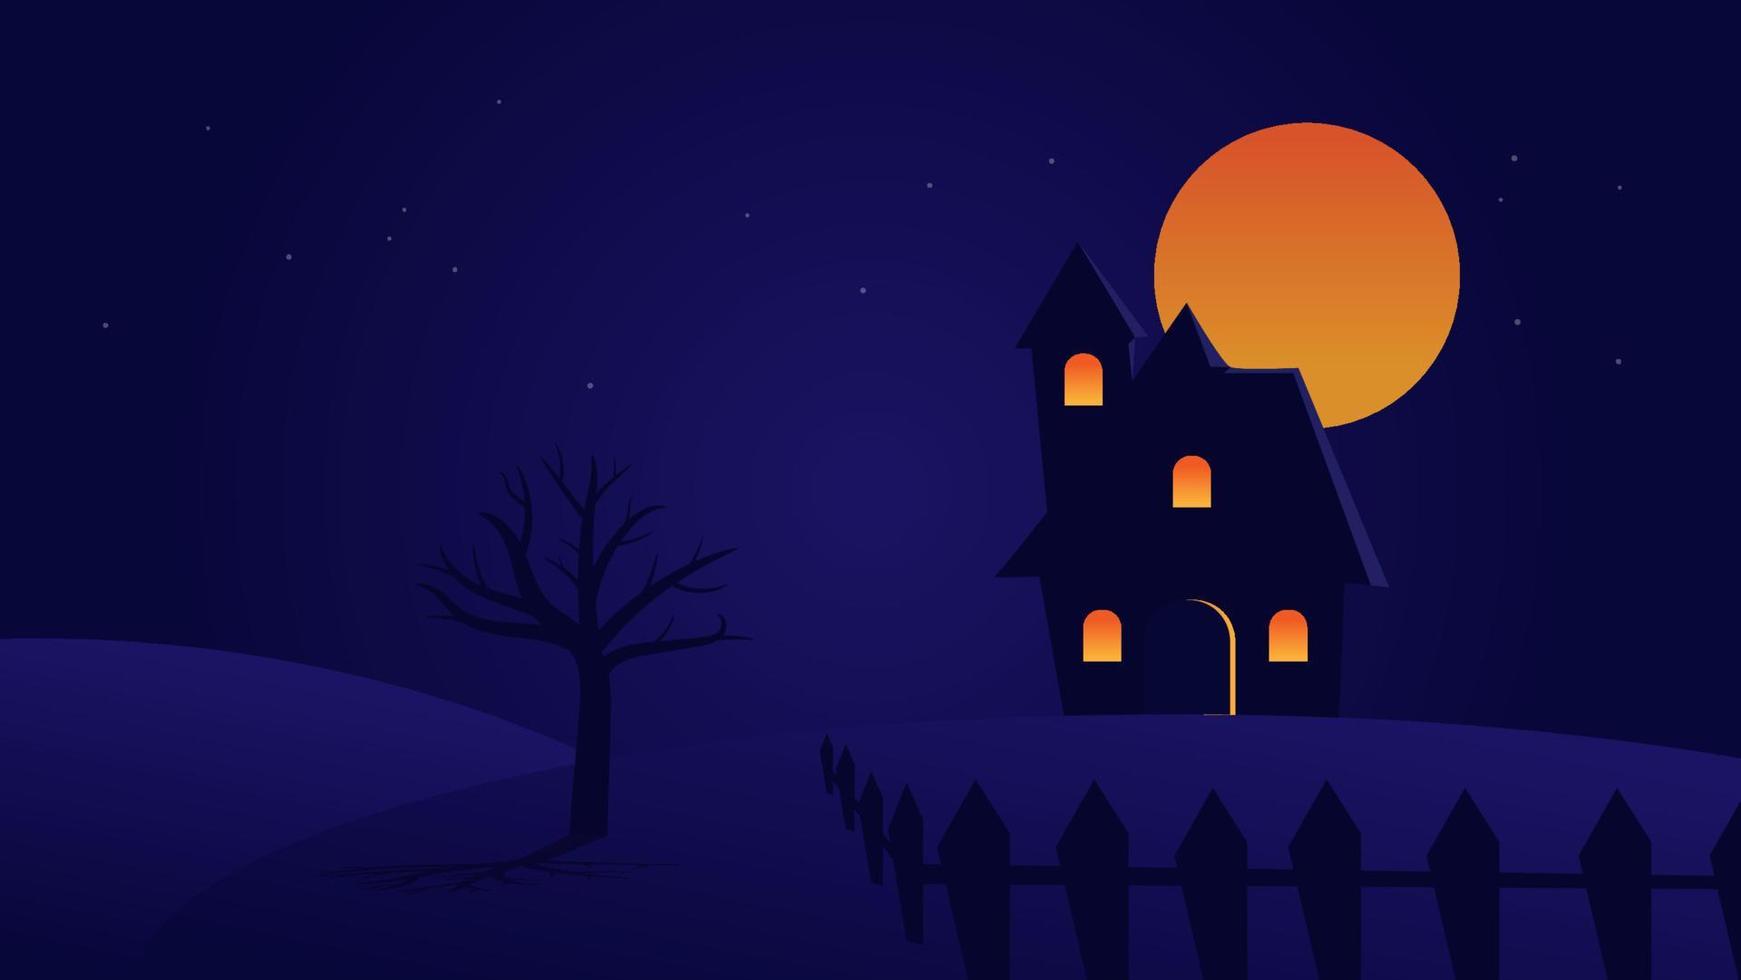 dibujos animados de castillo embrujado con luna llena en el cielo nocturno vector